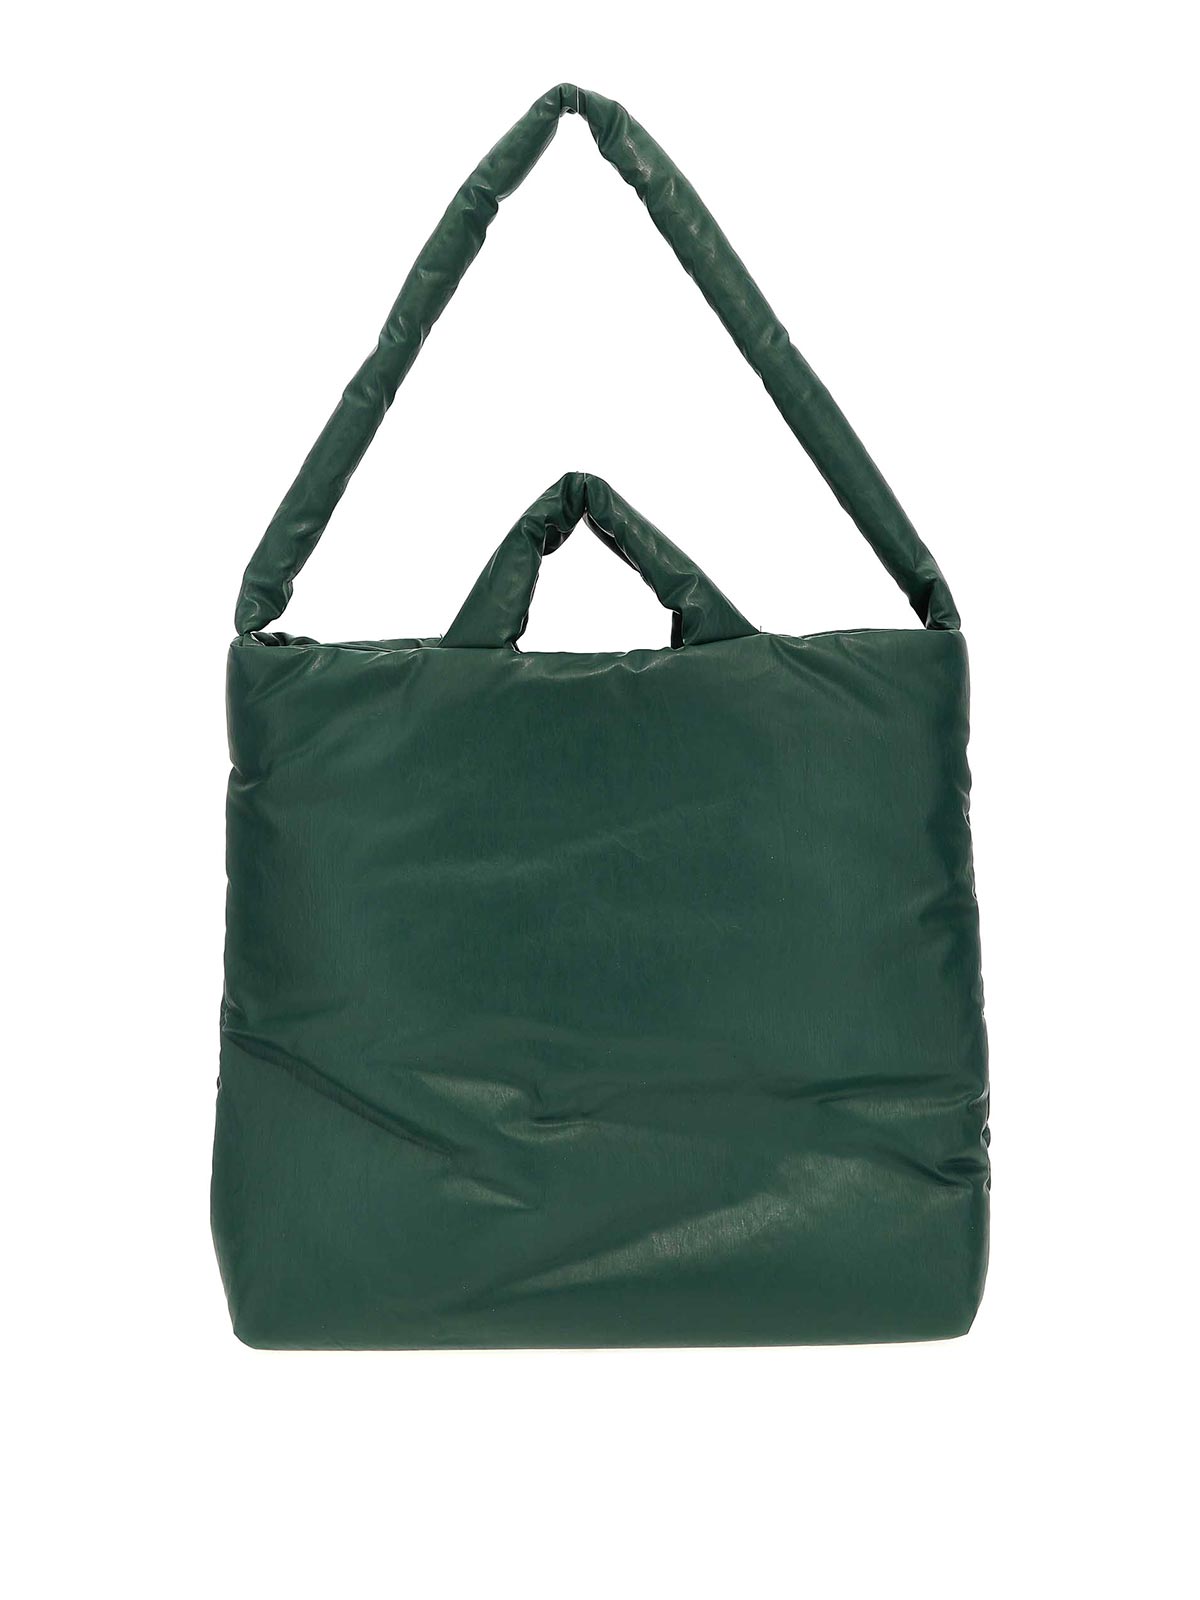 Kassl Editions Pillow Medium Shopping Bag In Green